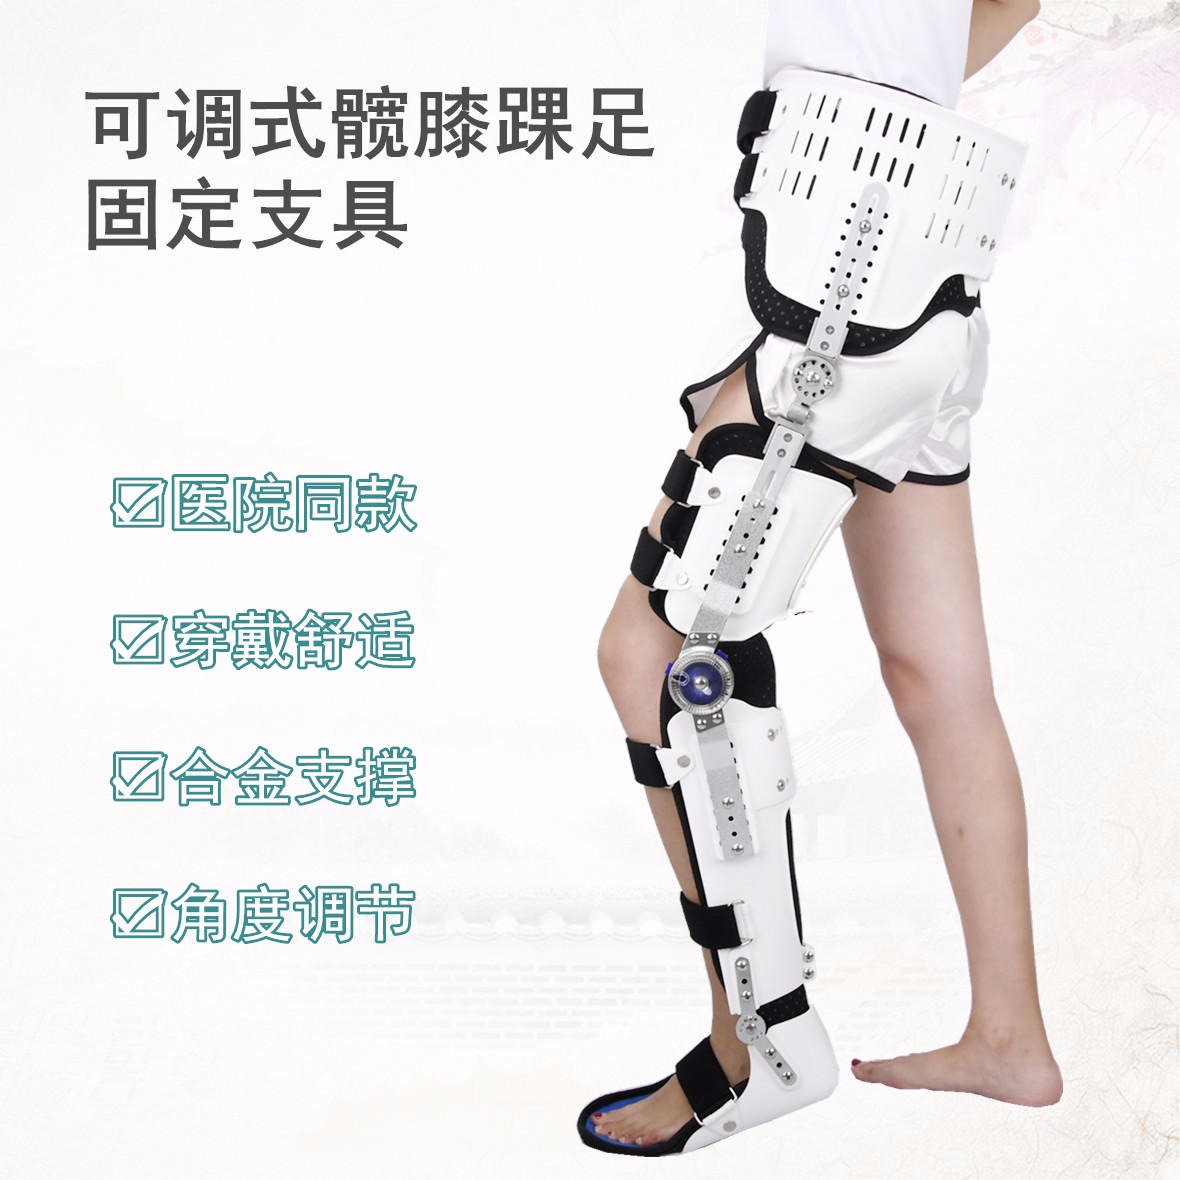 康奇医疗厂家髋关节截瘫行走固定支具股骨骨折护具胯部术后可调髋膝踝足护具